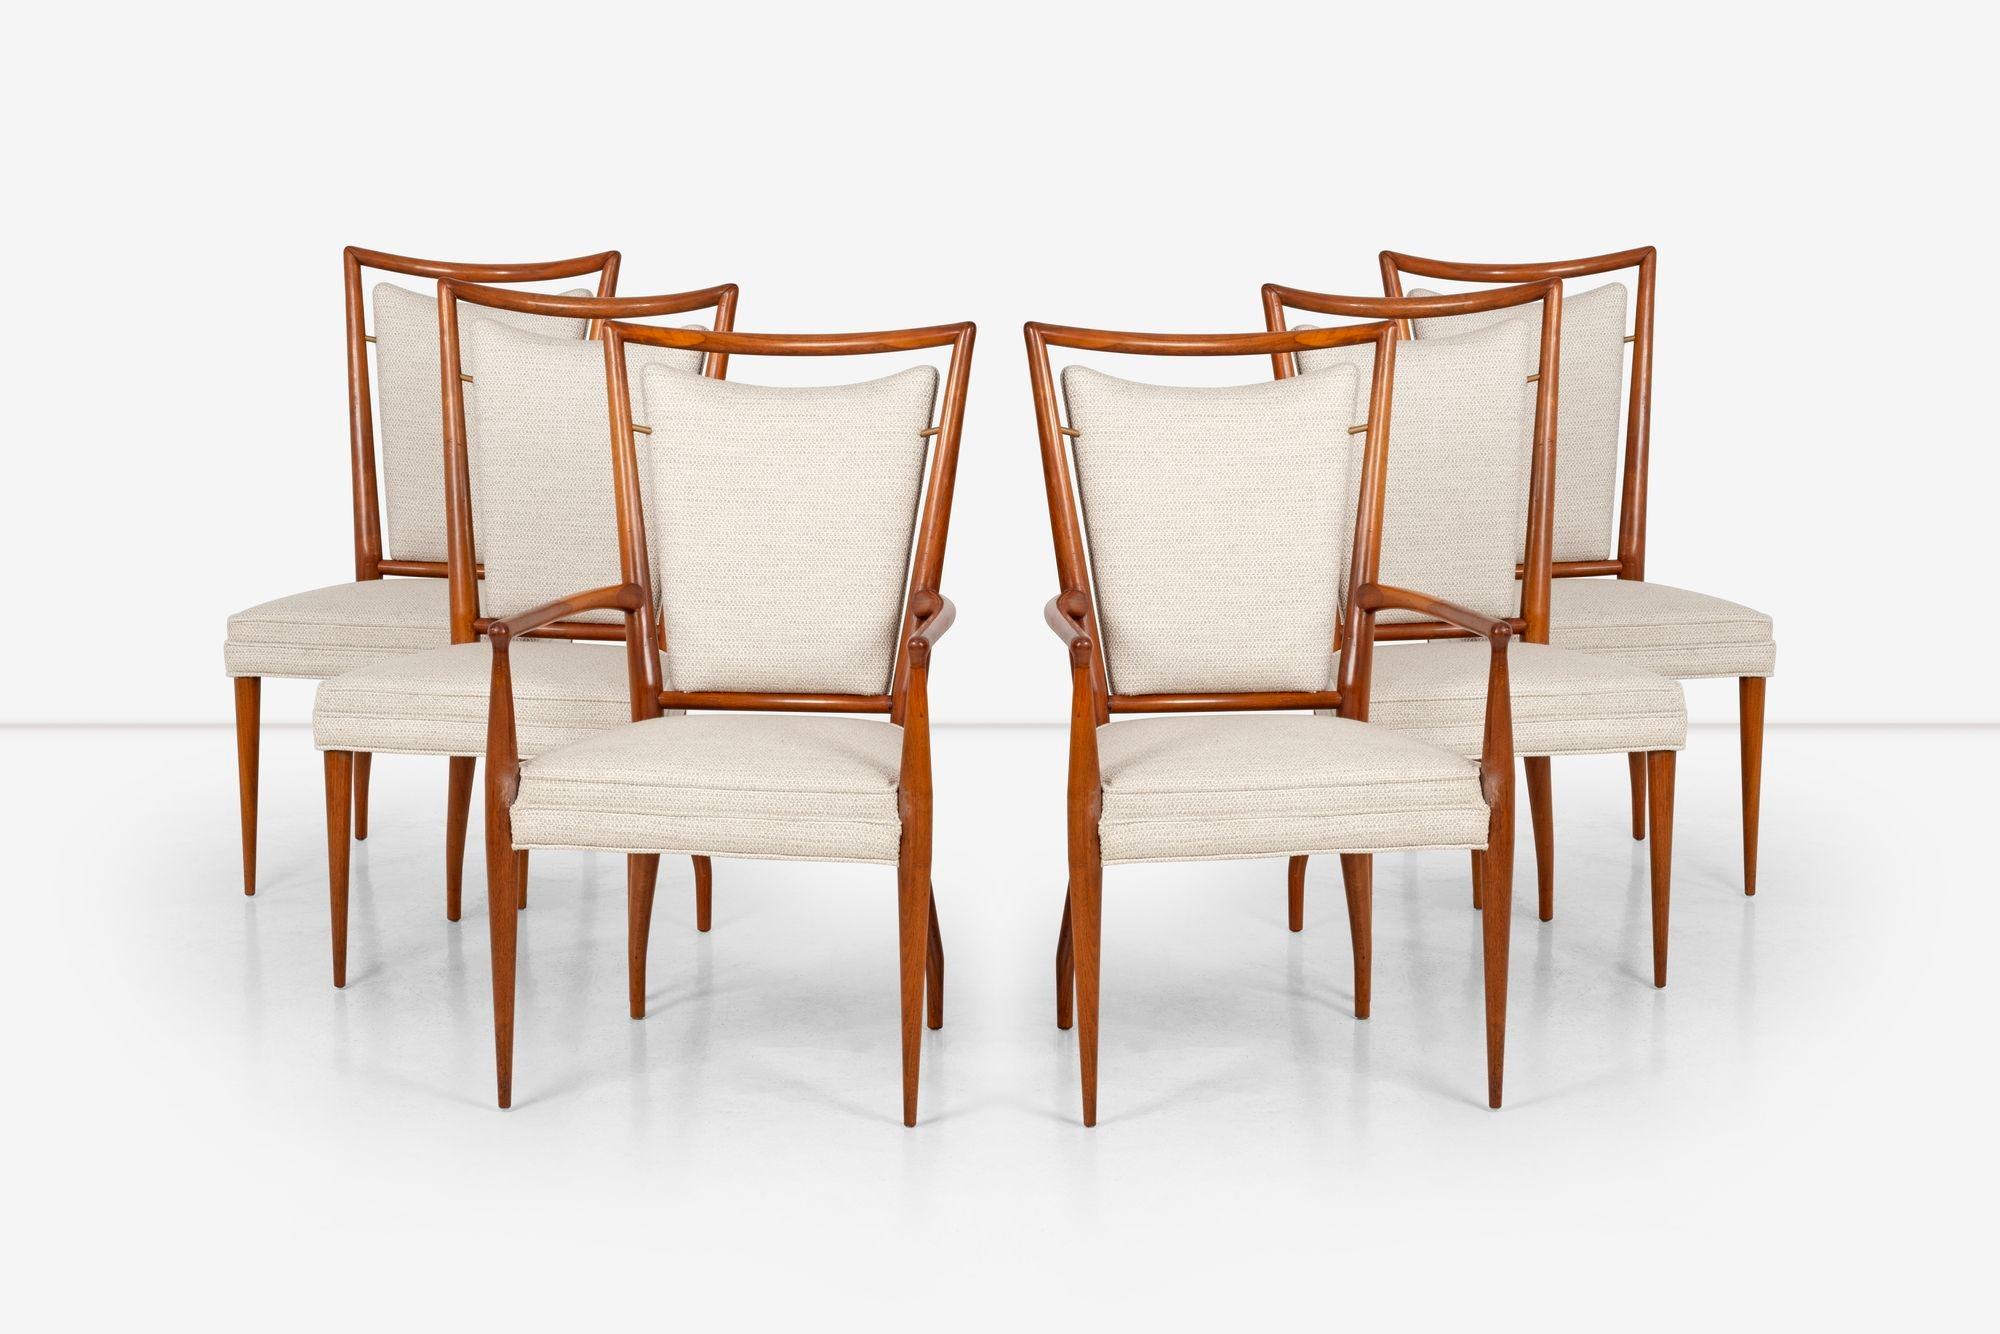 Paire de six chaises de salle à manger par J. Stuart Clingman pour Widdicomb. Les chaises sont fabriquées en bois d'acajou massif avec une finition laquée et sont dotées de détails en laiton. Ils ont été retapissés avec du tissu coton-poly.
J.